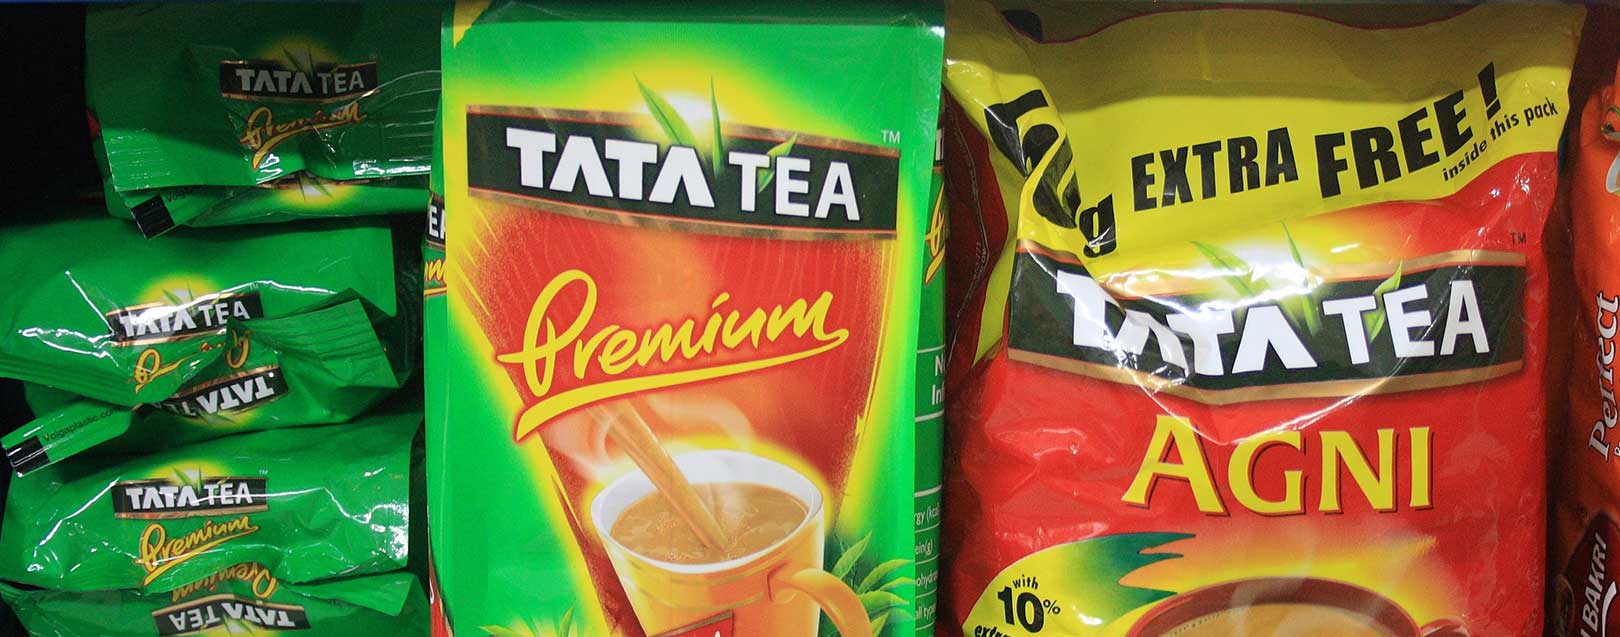 Tata Global Beverages to sell stake in Zhejiang Tata Tea